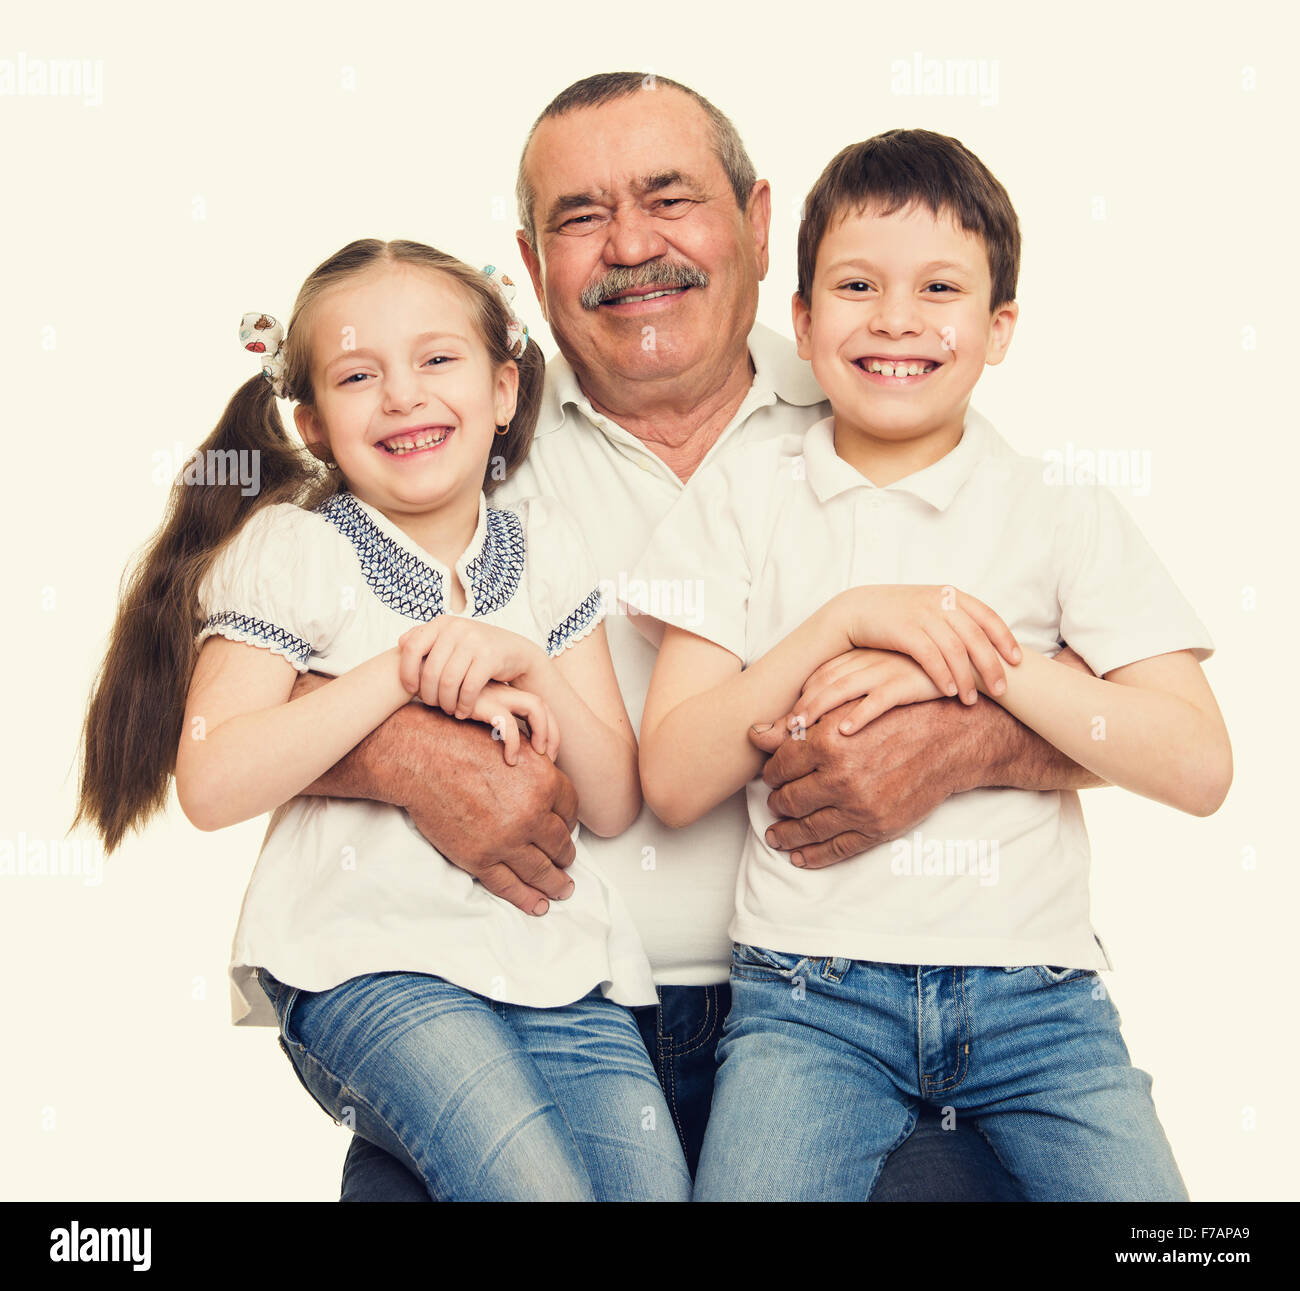 Grandfather and grandchildren portrait Stock Photo